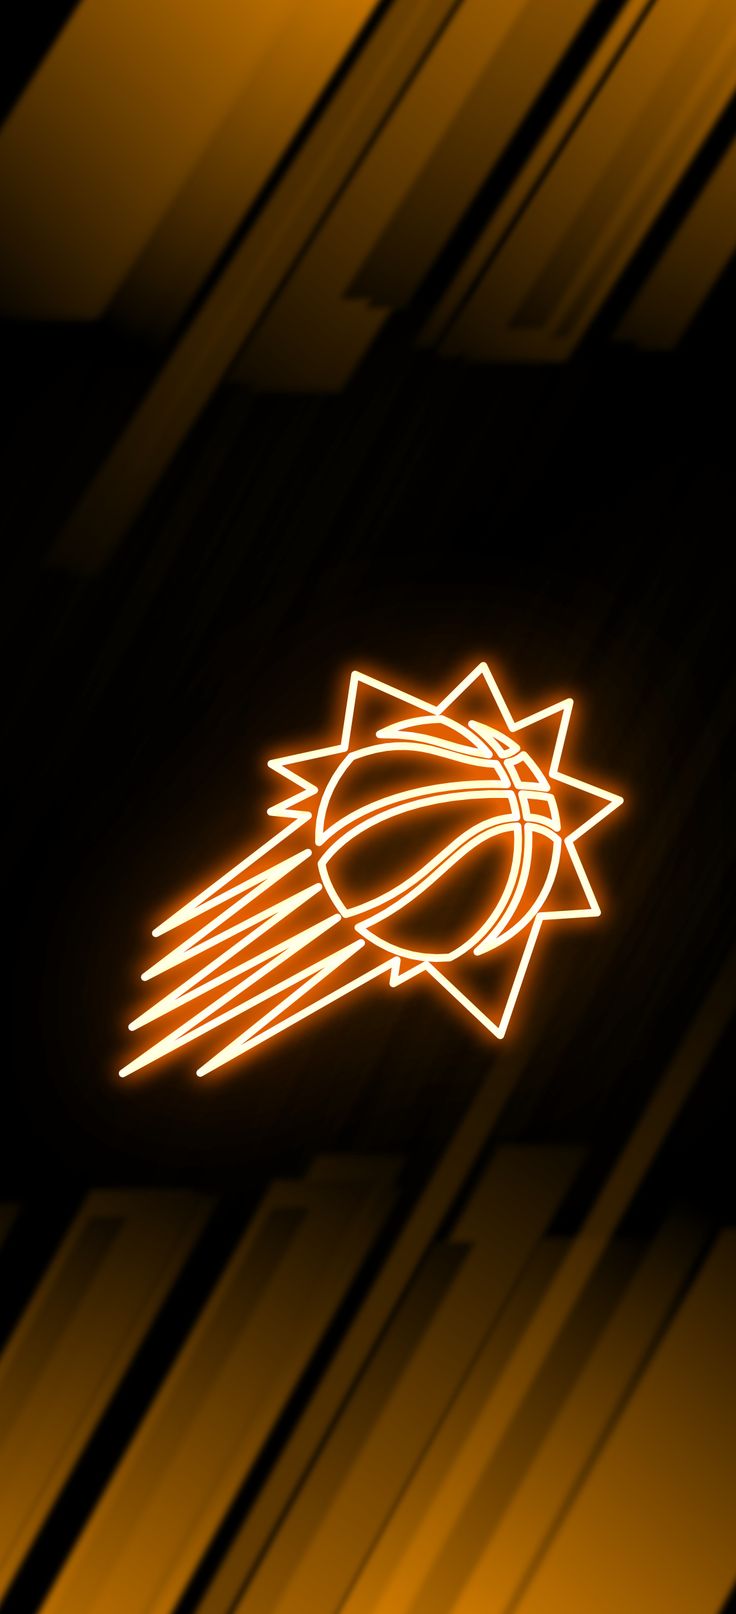 Phoenix Suns Neon Wallpaper. Phoenix suns, Sun background, Basketball wallpaper